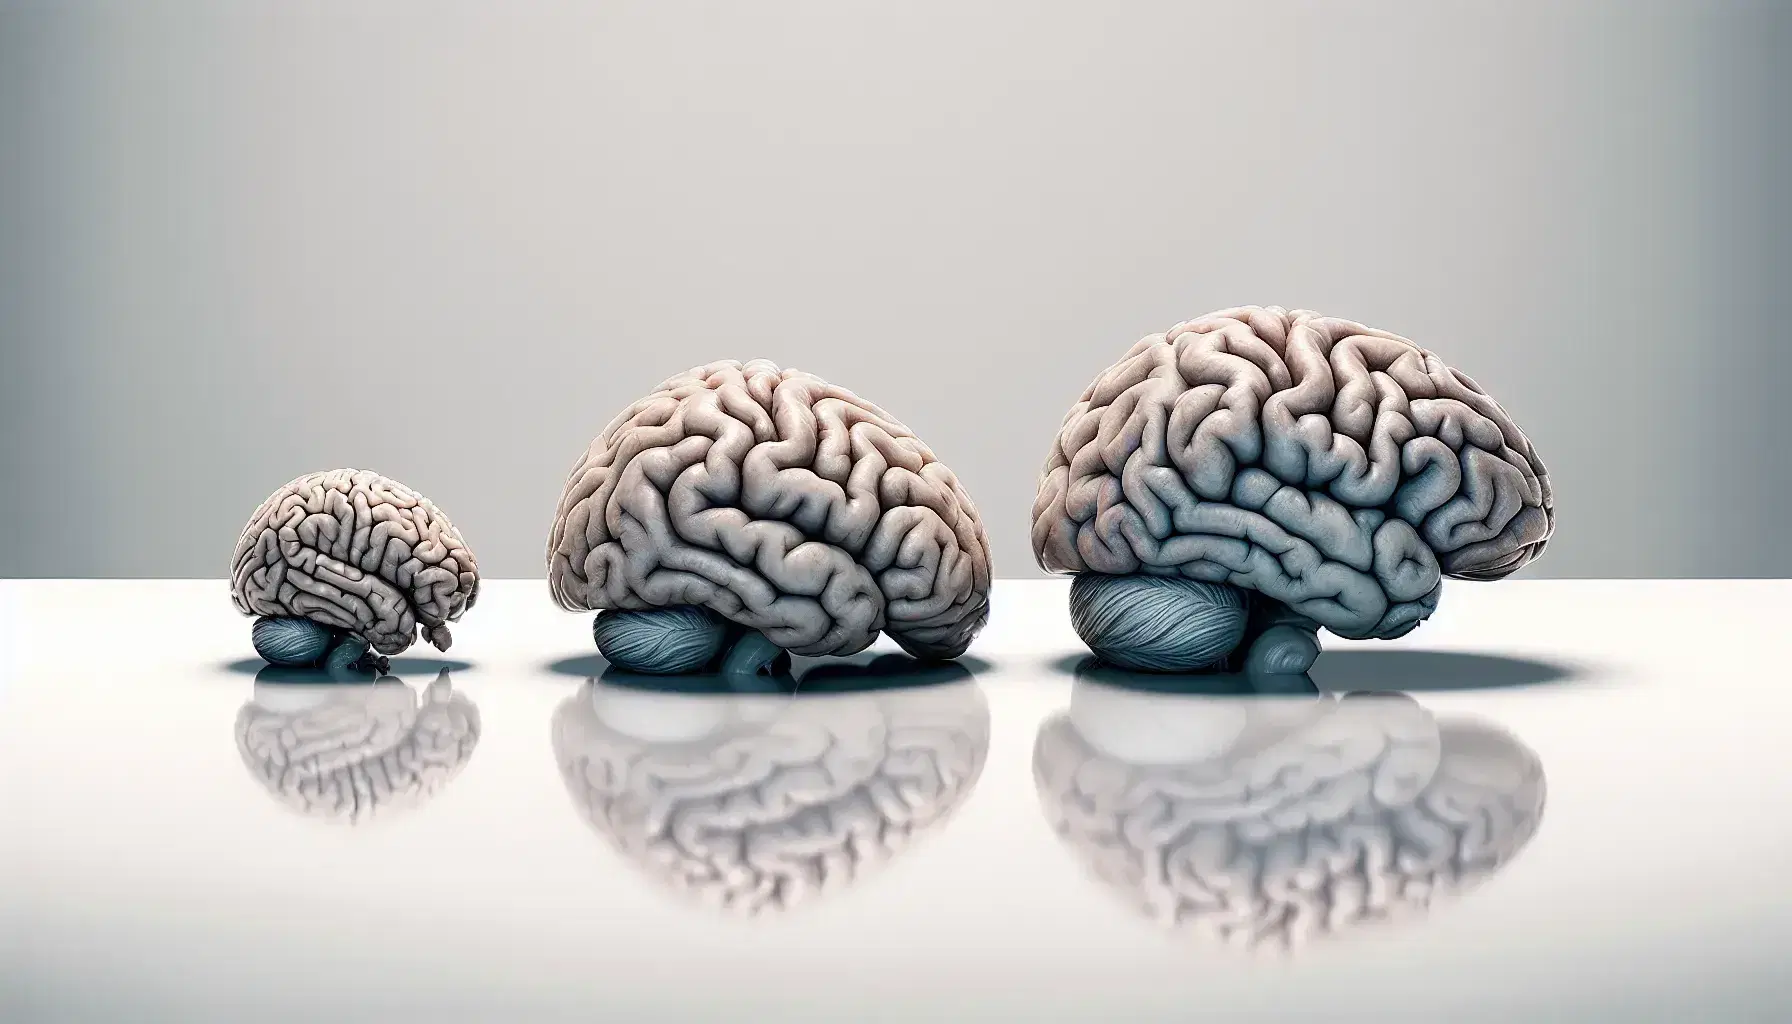 Tres cerebros mamíferos en orden creciente de complejidad y tamaño, desde un cerebro pequeño y liso hasta uno grande y muy plegado.